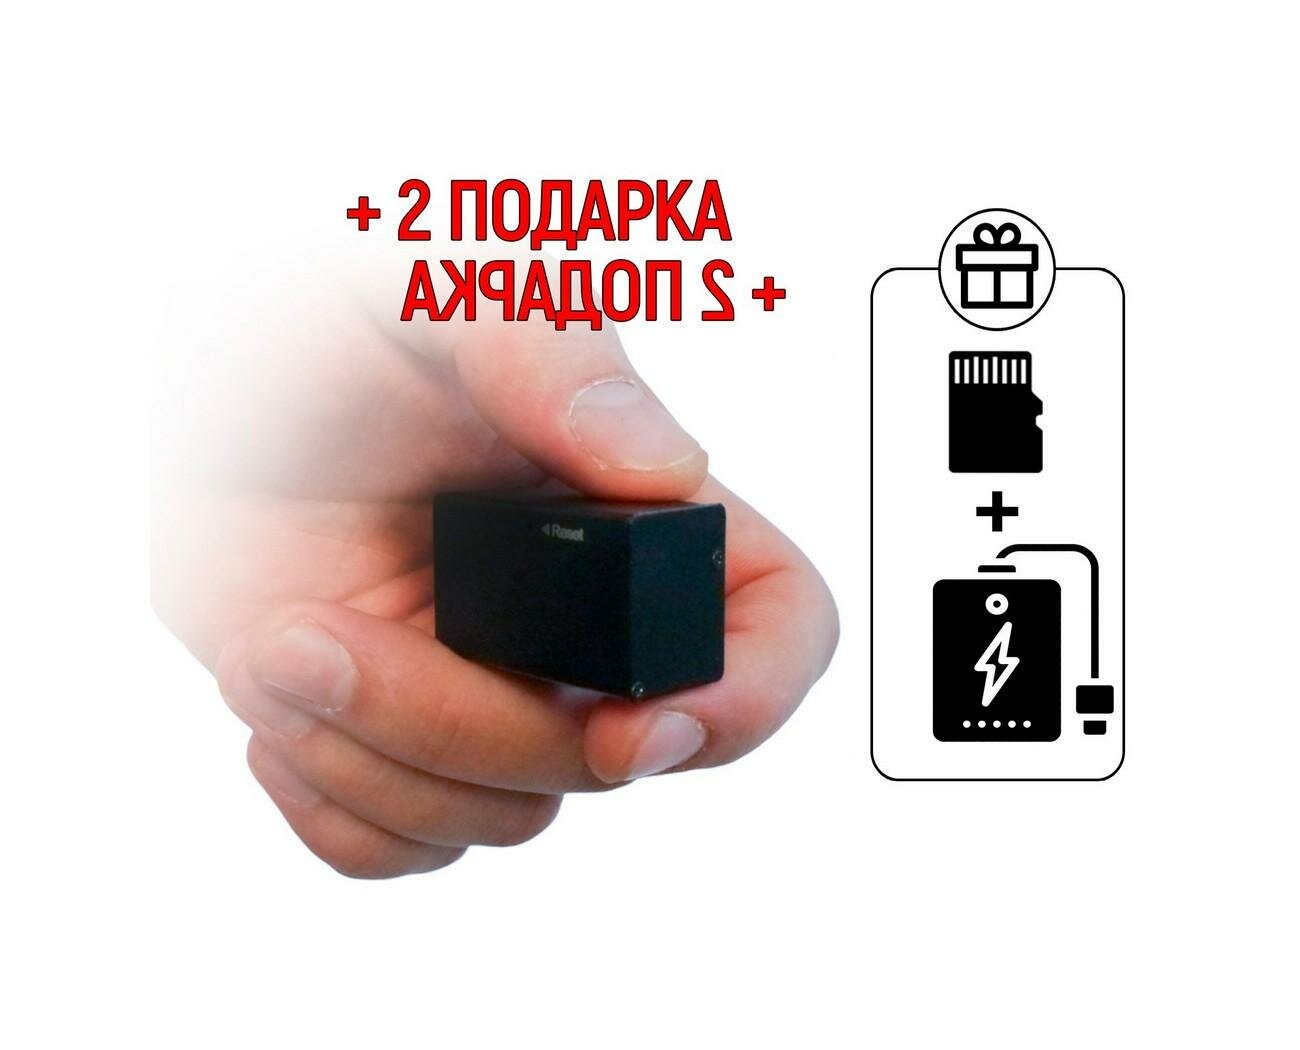 Самый маленький диктофон Edic-mini CARD-16 мод: A99 (W4490RU) + 2 подарка (Повербанк 10000 mAh + SD карта) - диктофон для записи хороший